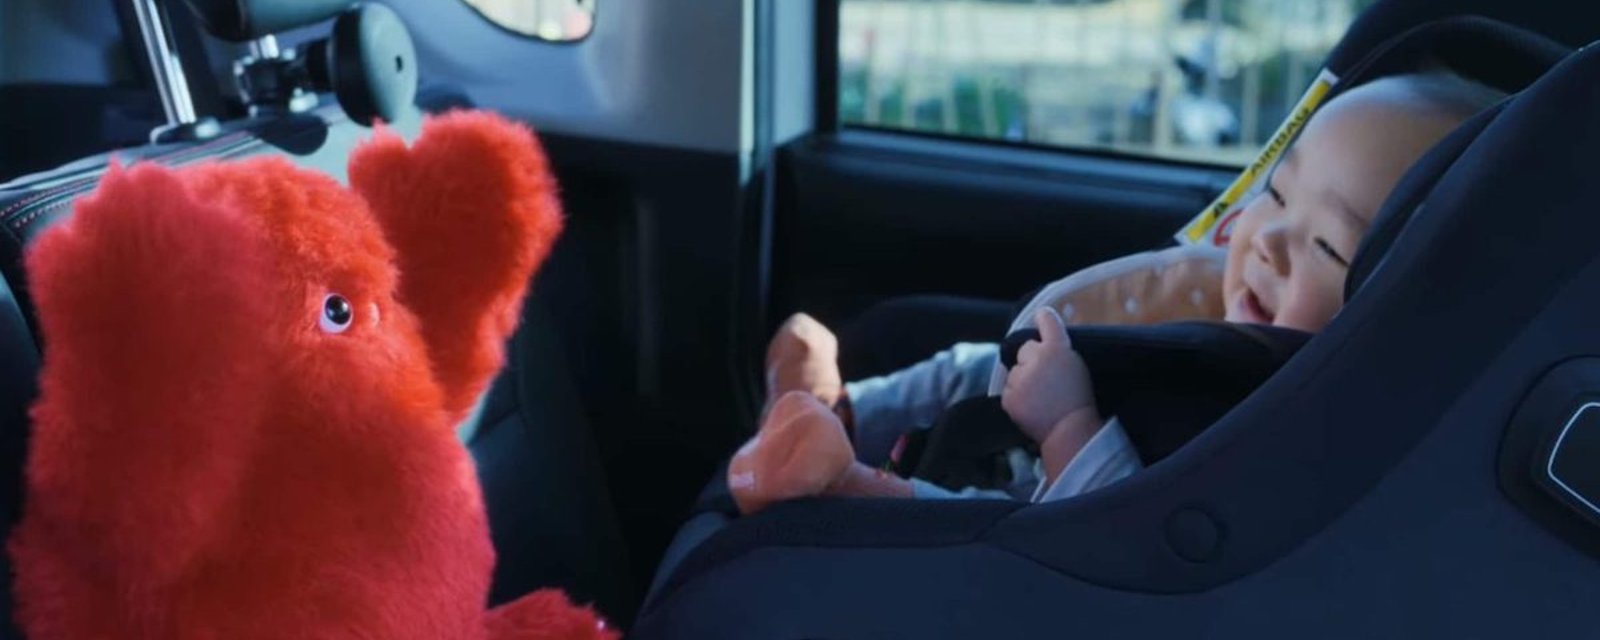 Nissan a imaginé une peluche intelligente qui calme les bébés lors des trajets en voiture